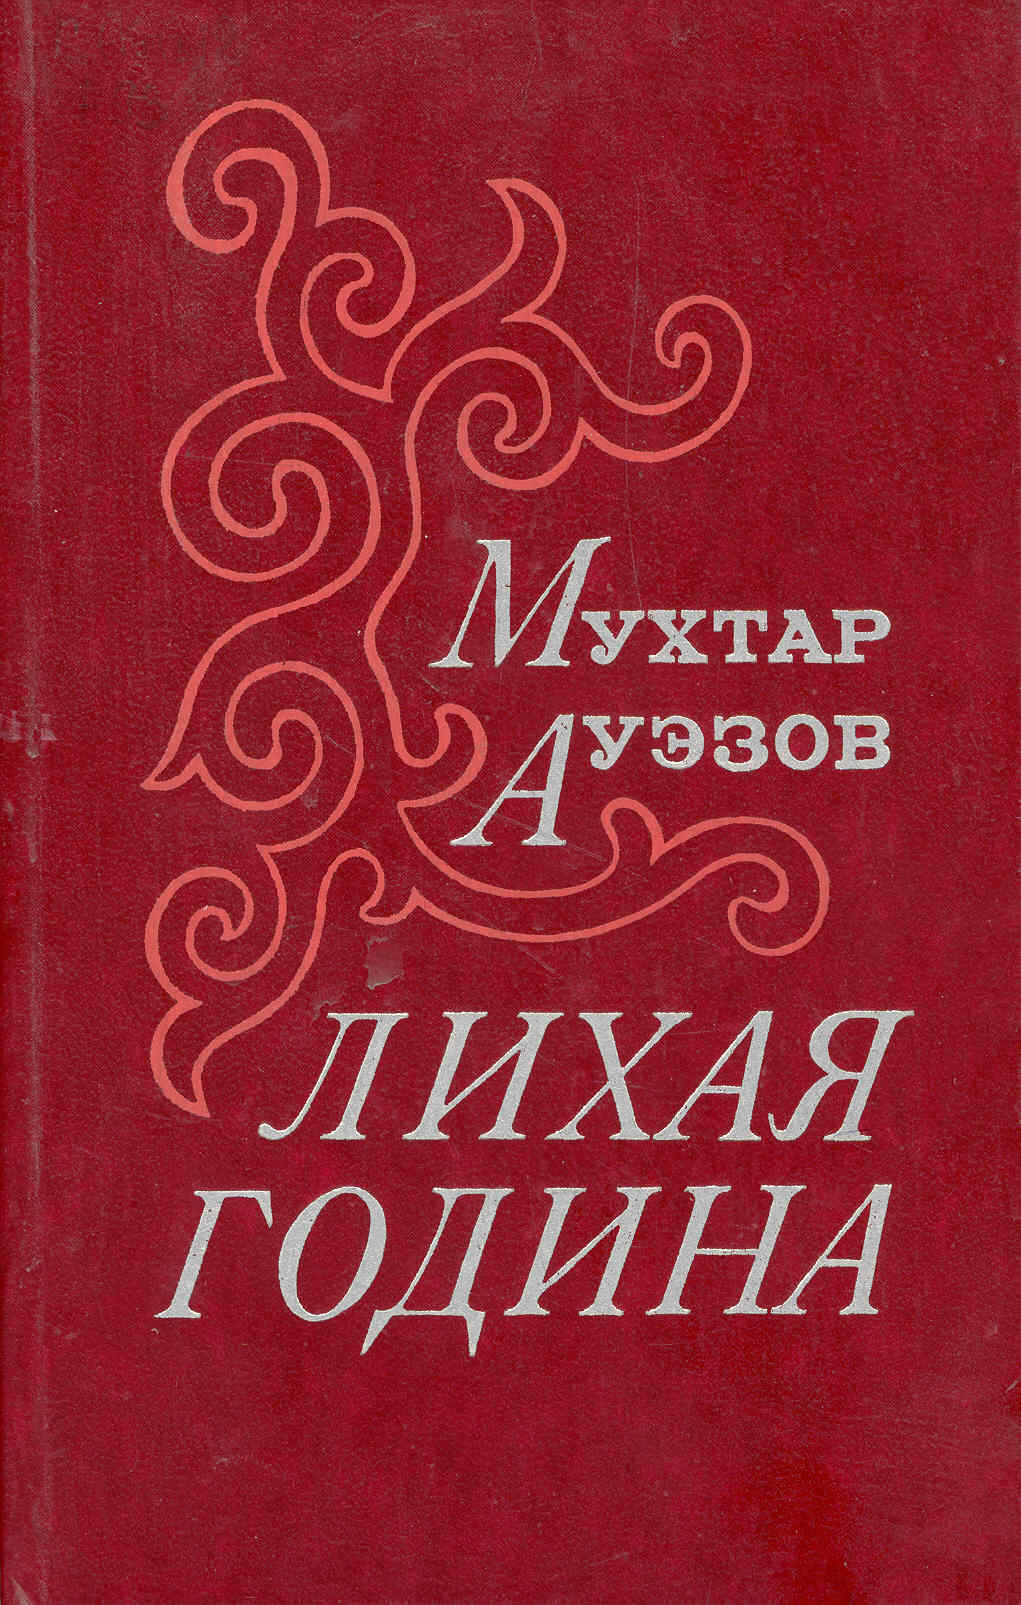 Час м книга. Лихая година книга. Книги казахских писателей. Произведения м.Ауэзова. Мухтар Ауэзов книги.